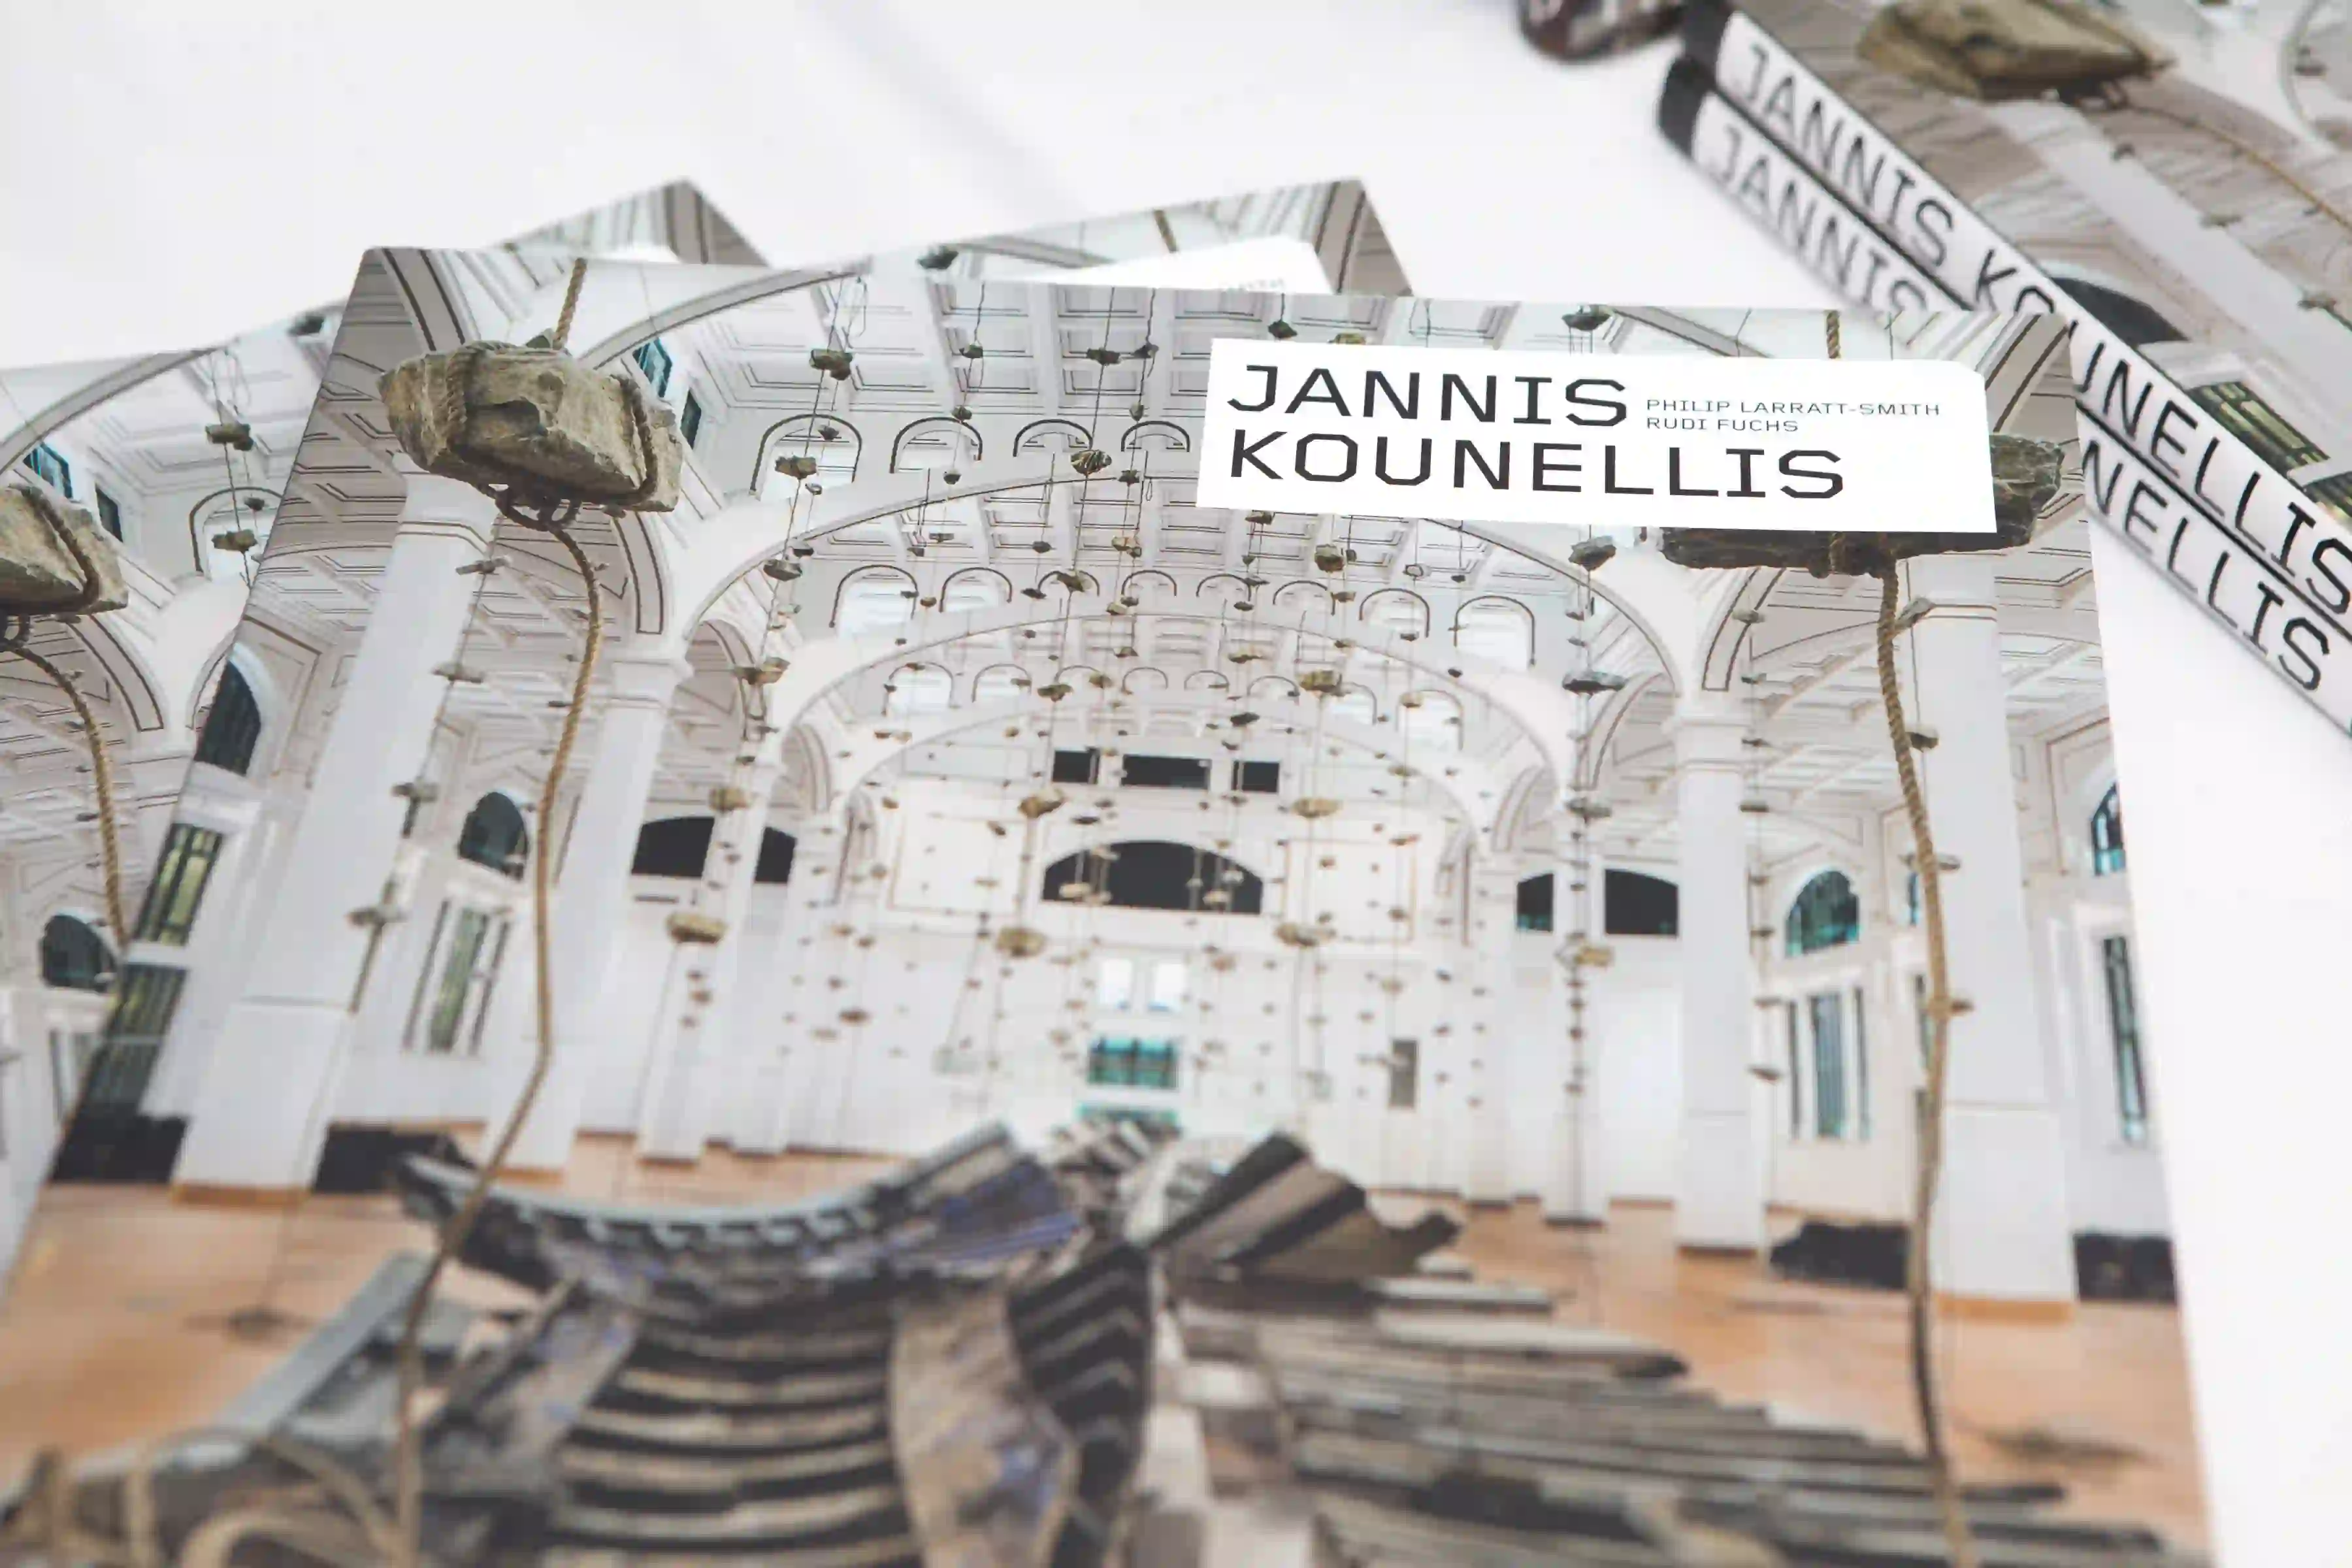 Jannis Kounellis books on display